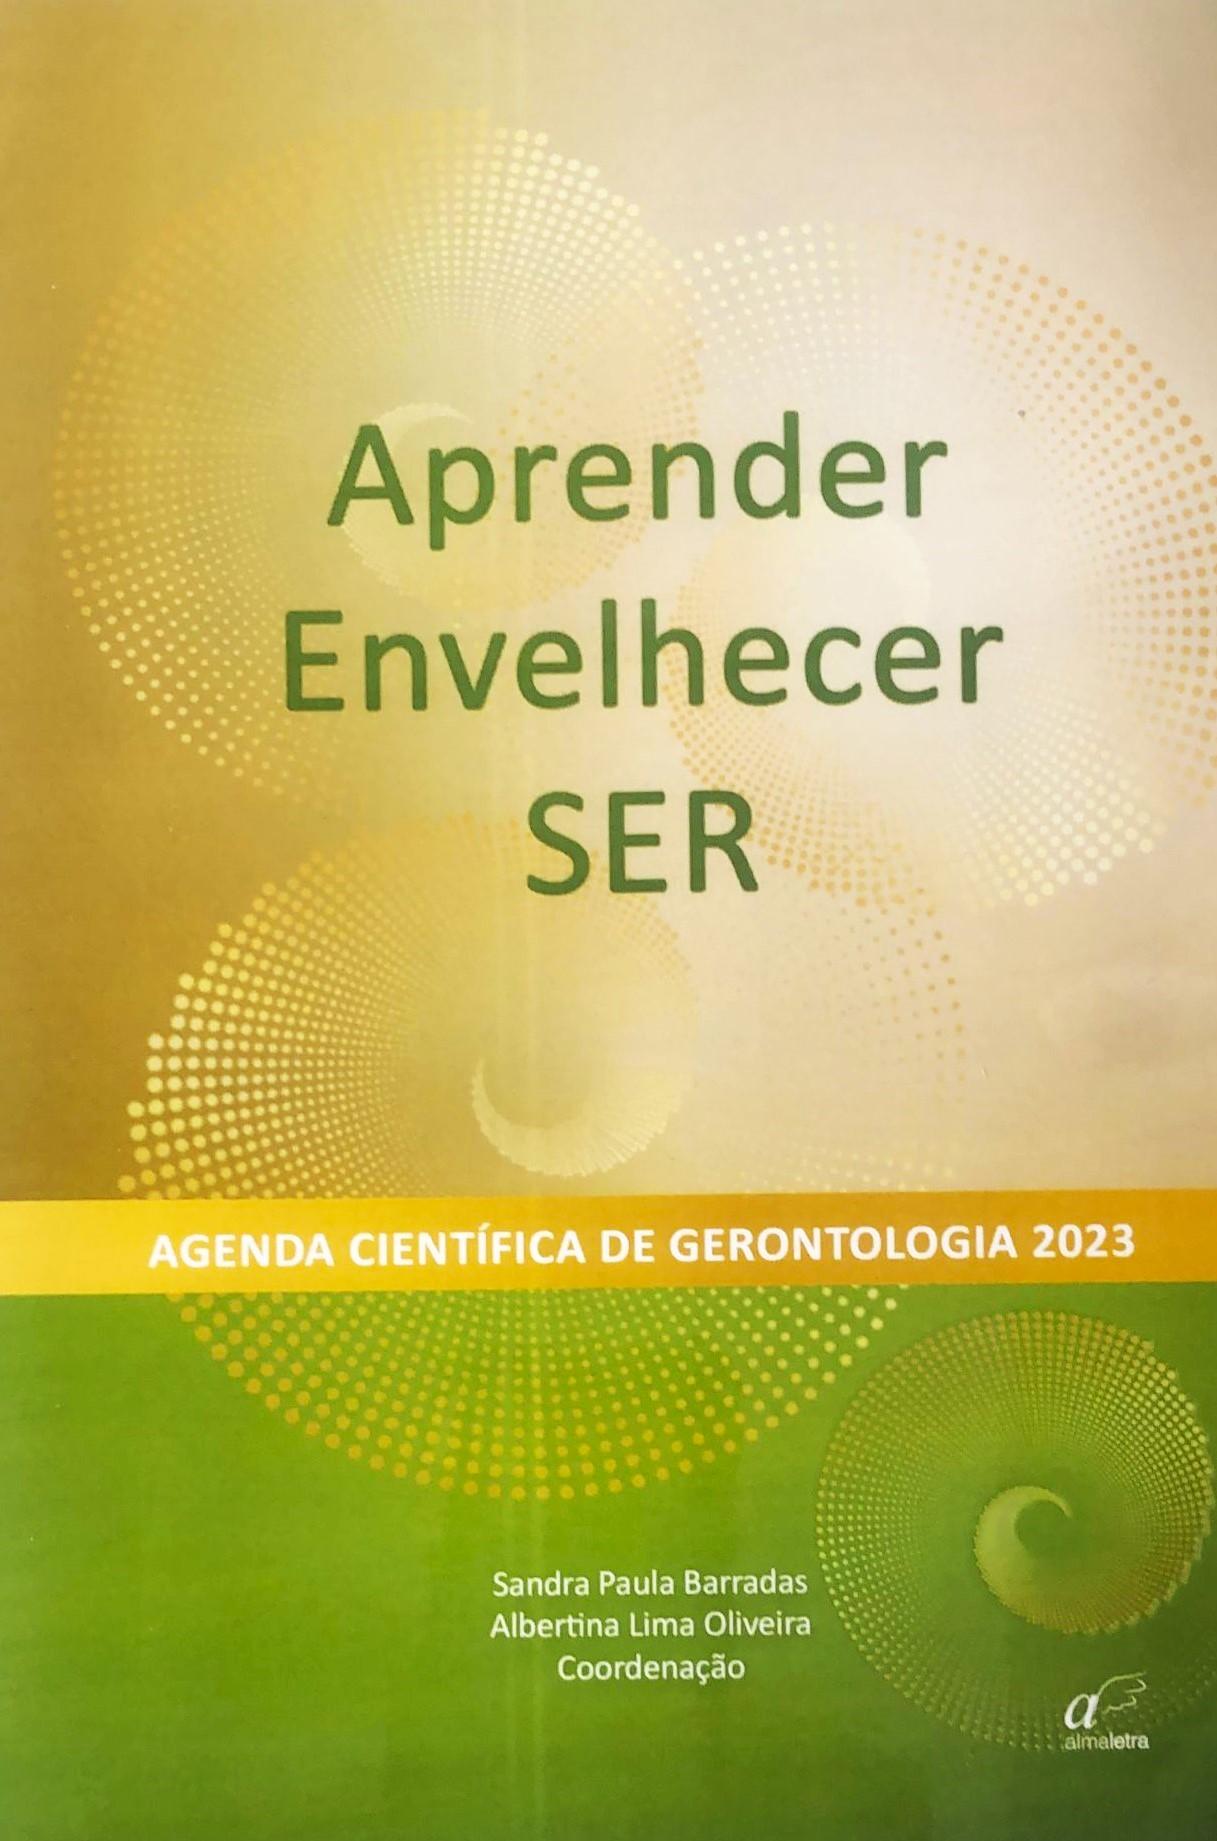 Agenda de Gerontologia 2023 - Aprender, Envelhecer... SER